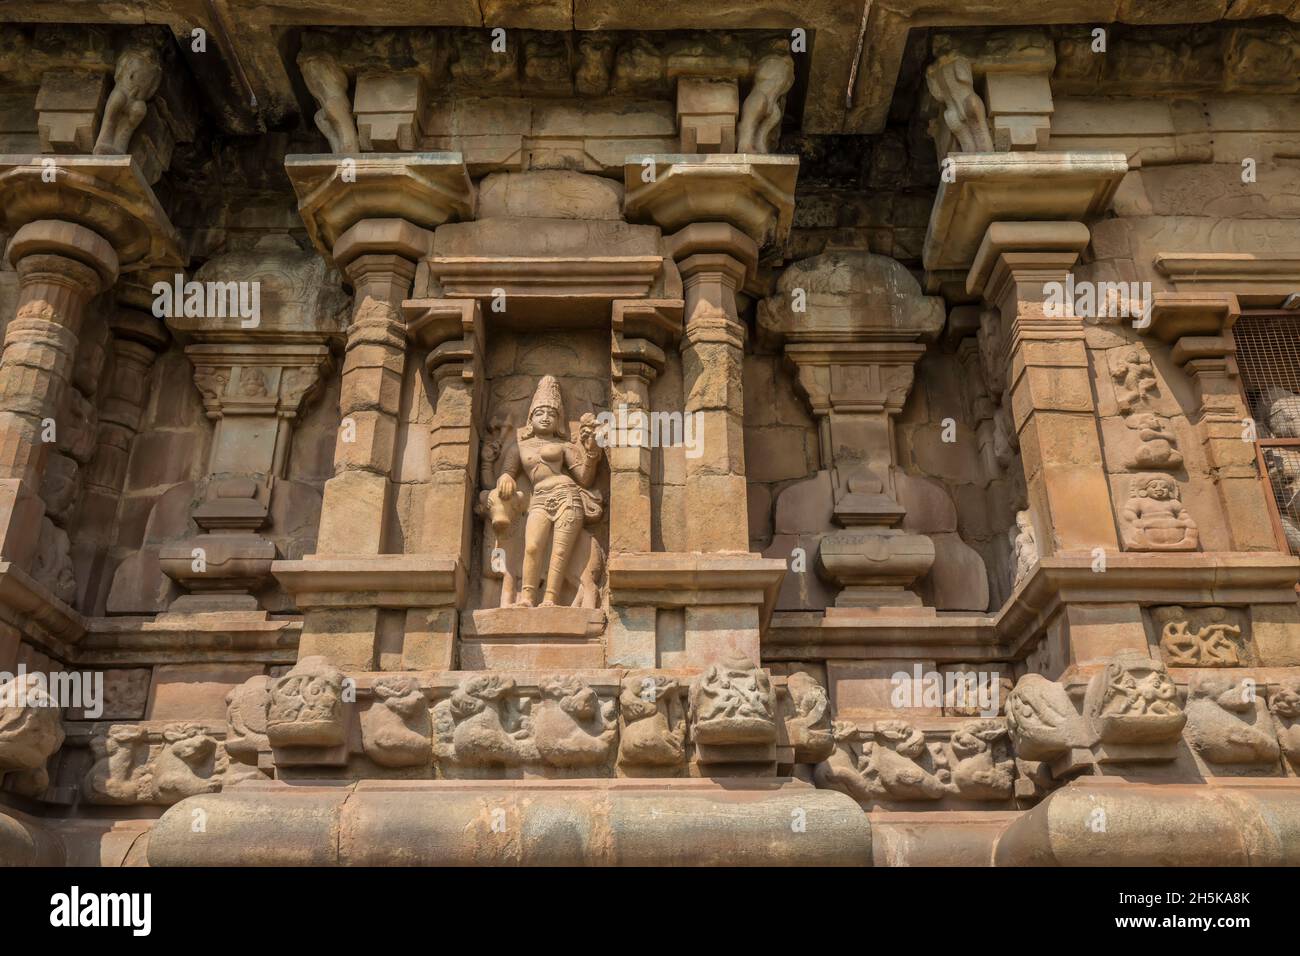 Nische mit hinduistischer Gottheitsschnitzerei in Steinmauer des Dravidischen Chola-Tempels der Airavatesvara-Ära mit Säulen und Reliefskulpturen Stockfoto